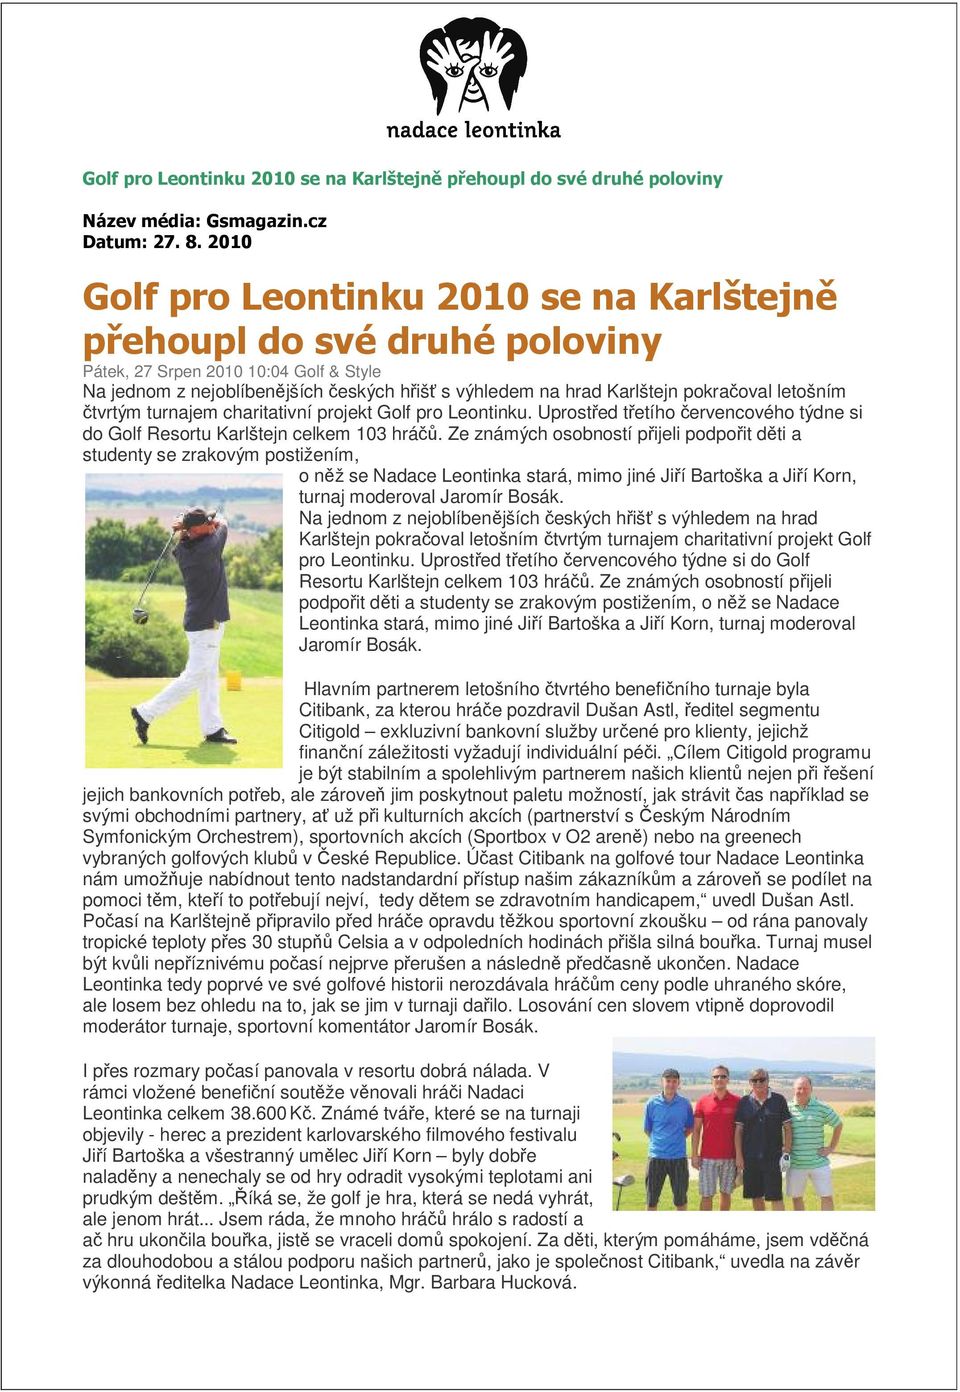 letošním čtvrtým turnajem charitativní projekt Golf pro Leontinku. Uprostřed třetího červencového týdne si do Golf Resortu Karlštejn celkem 103 hráčů.